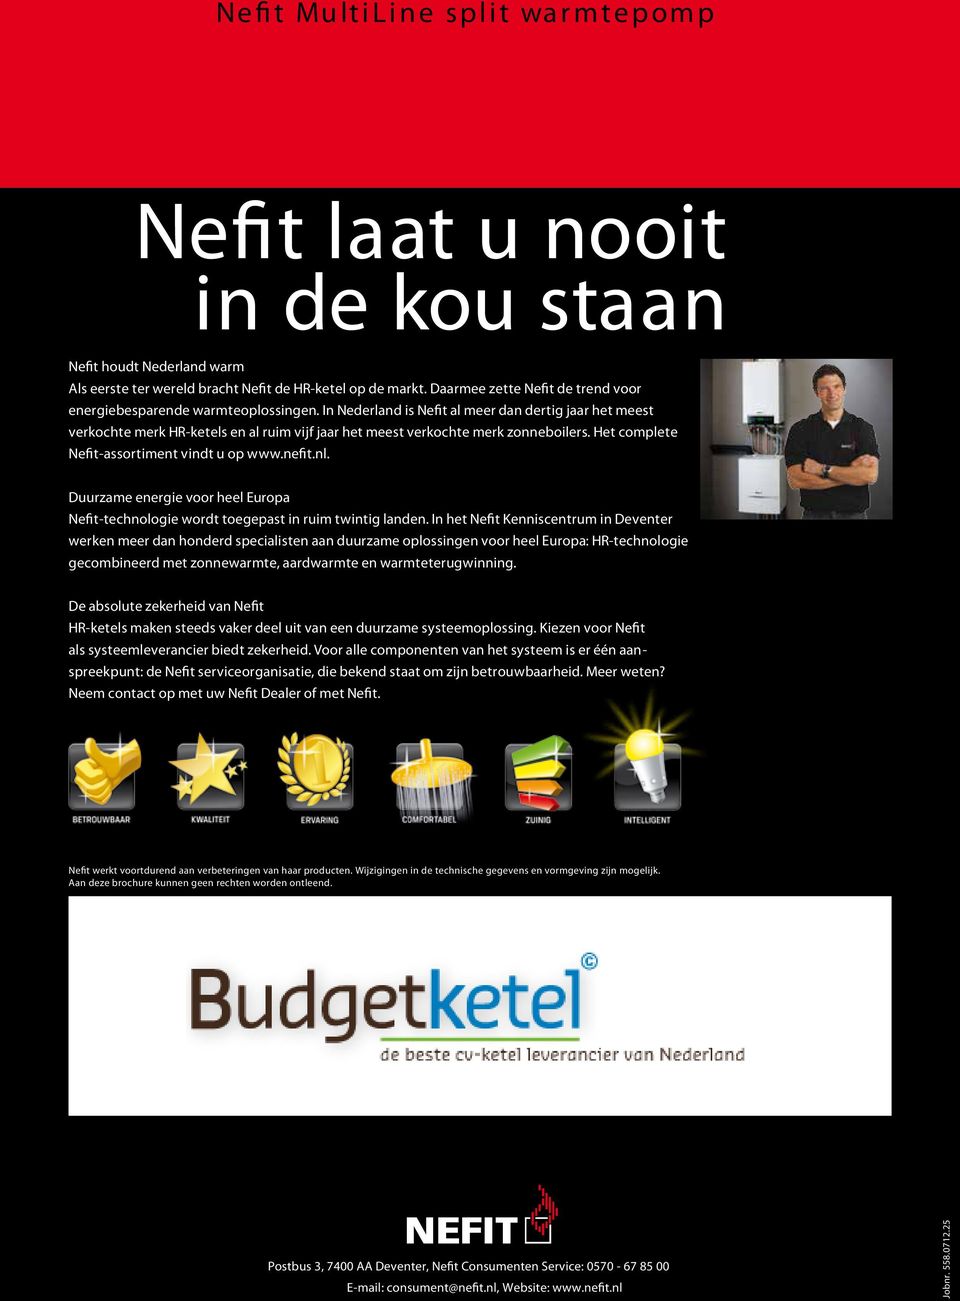 In Nederland is Nefit al meer dan dertig jaar het meest verkochte merk HR-ketels en al ruim vijf jaar het meest verkochte merk zonneboilers. Het complete Nefit-assortiment vindt u op www.nefit.nl.